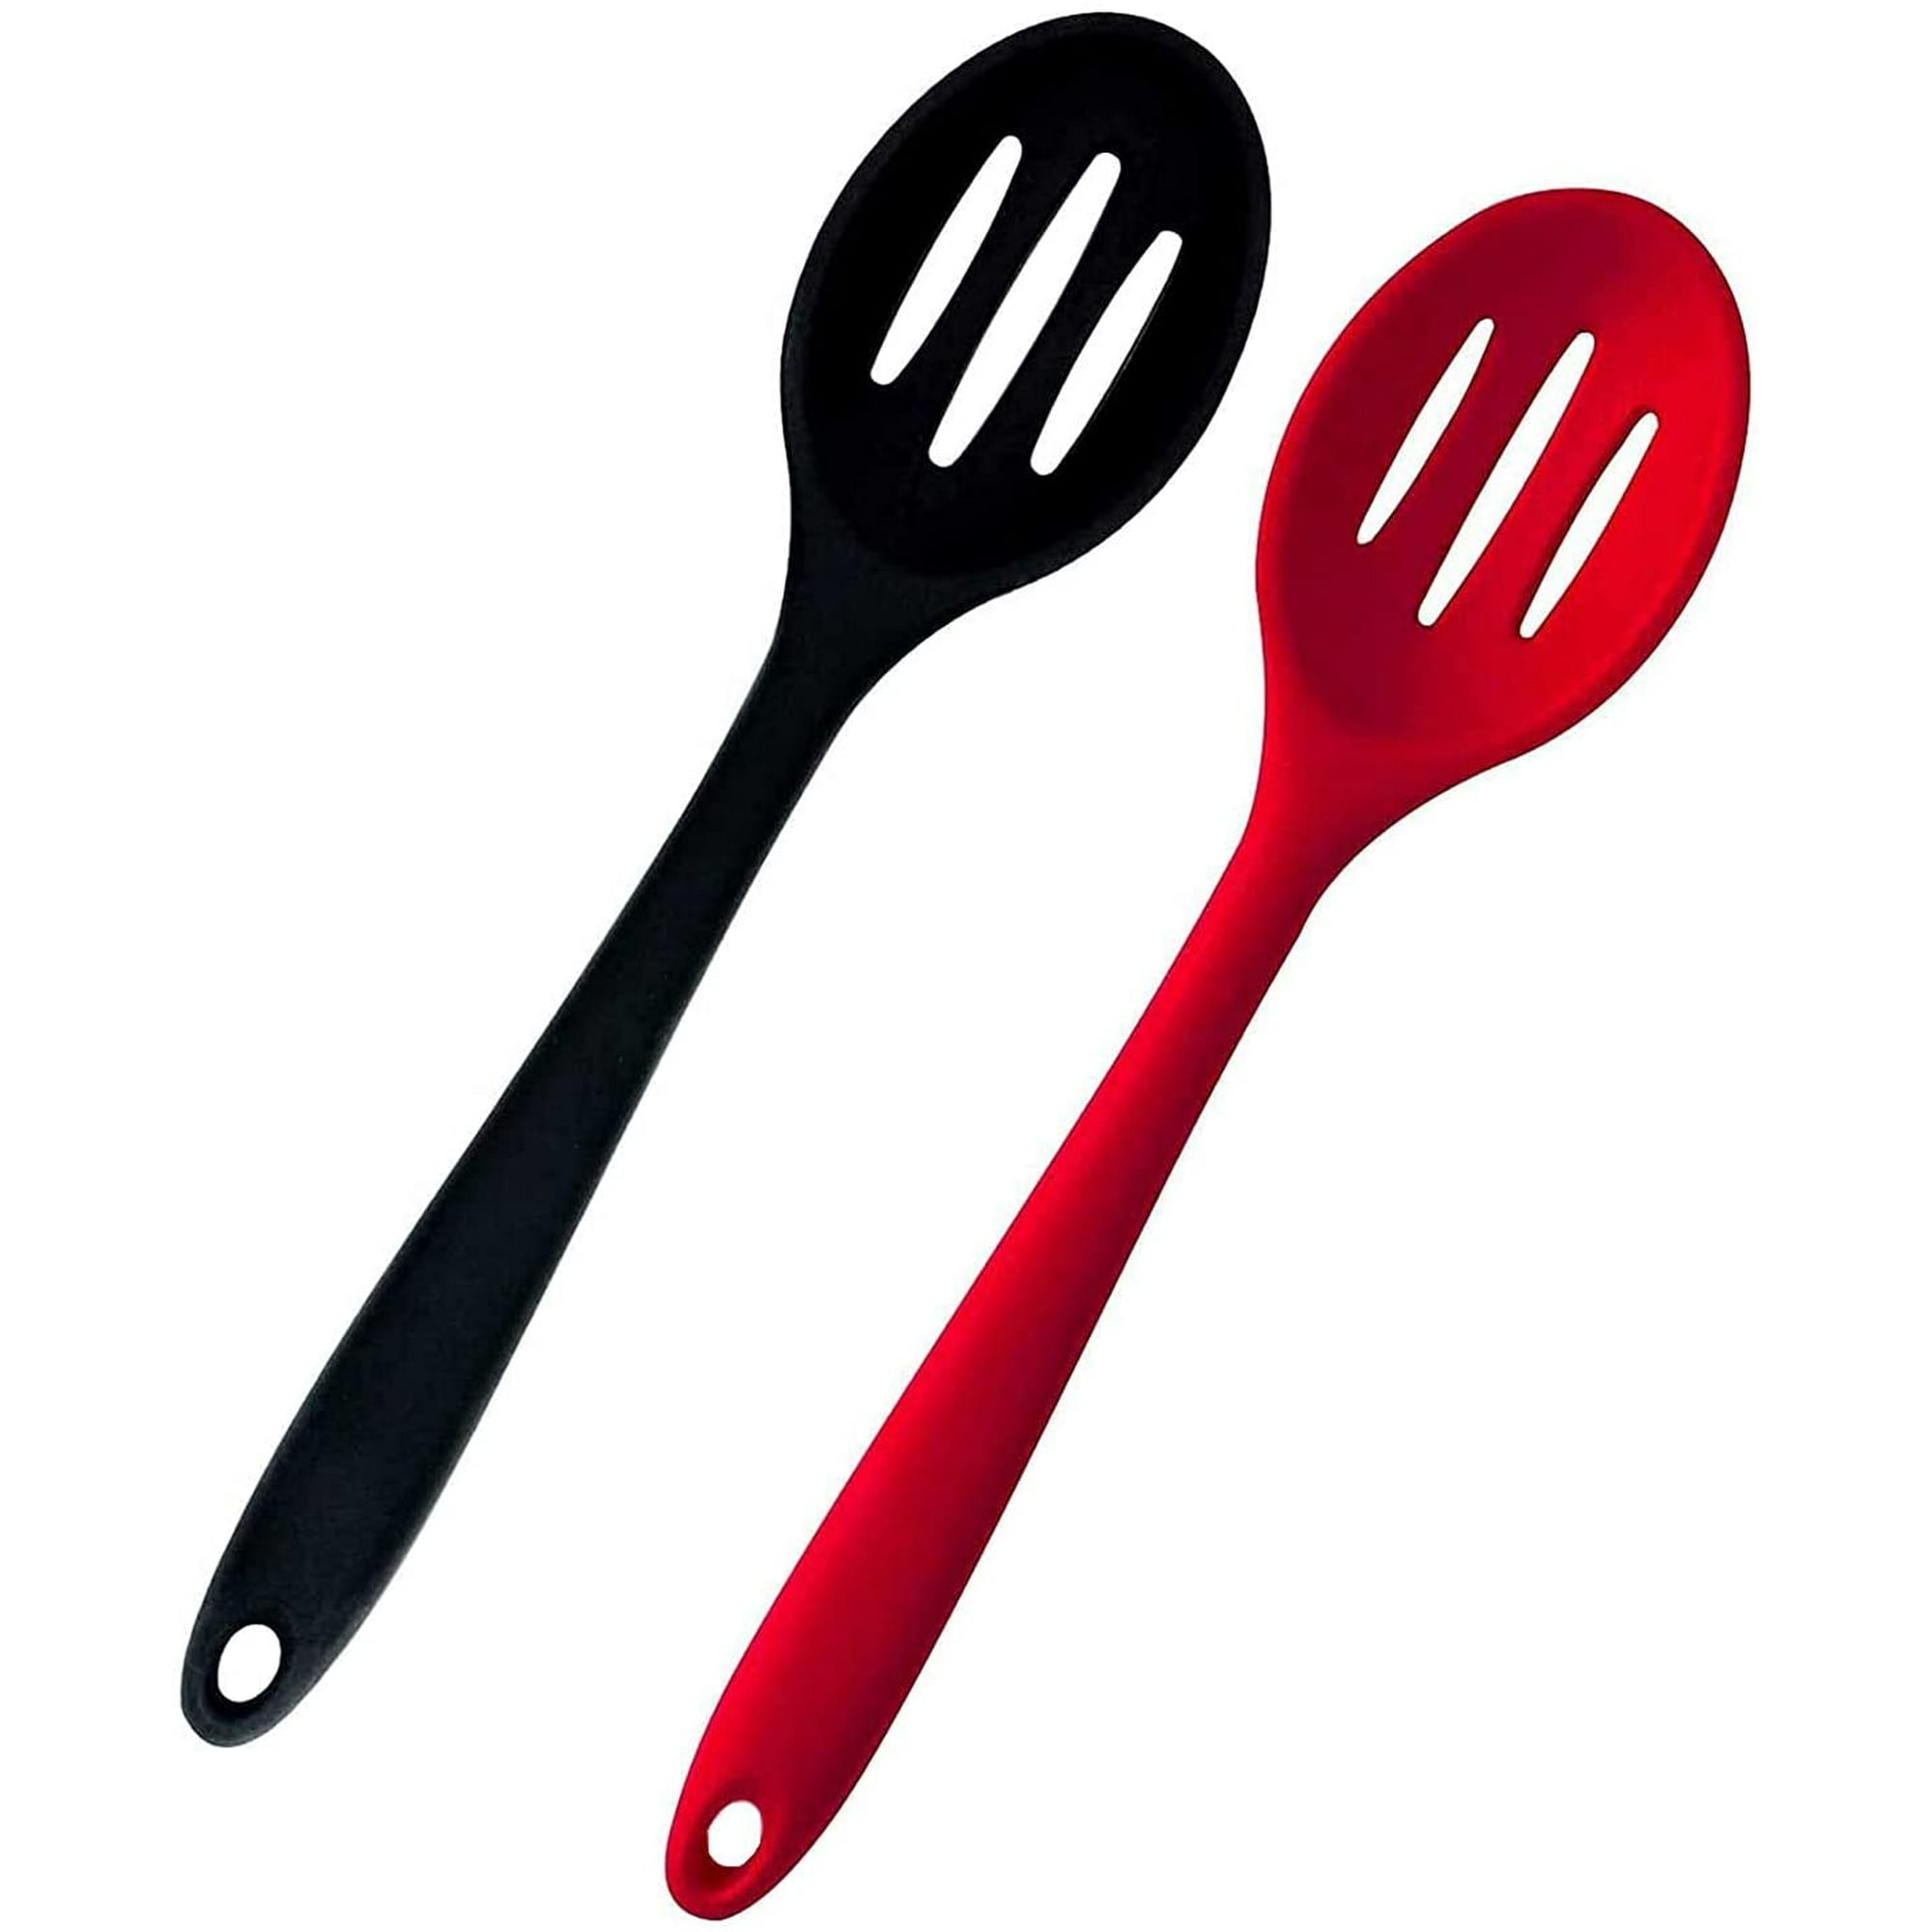 2 cucharas de silicona espumadera a prueba de calor, cuchara ranurada,  cucharón de cocina para filtrar verduras, pasta y más (rojo y negro)